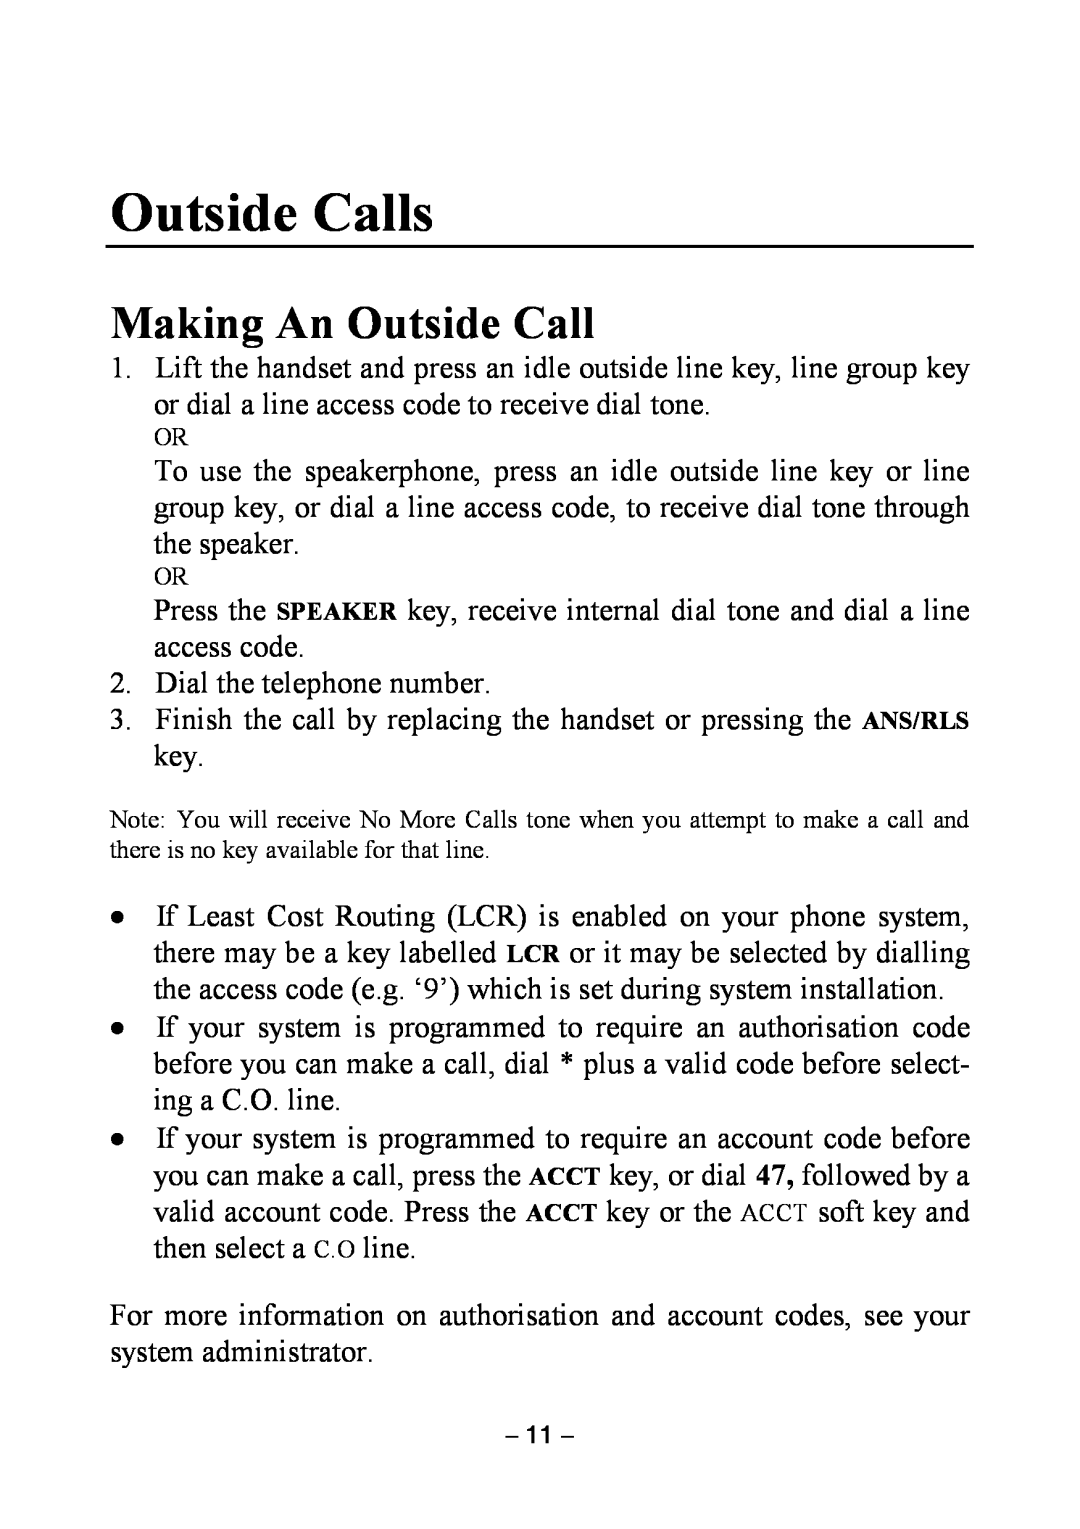 Samsung DCS KEYSET manual Outside Calls, Making An Outside Call 